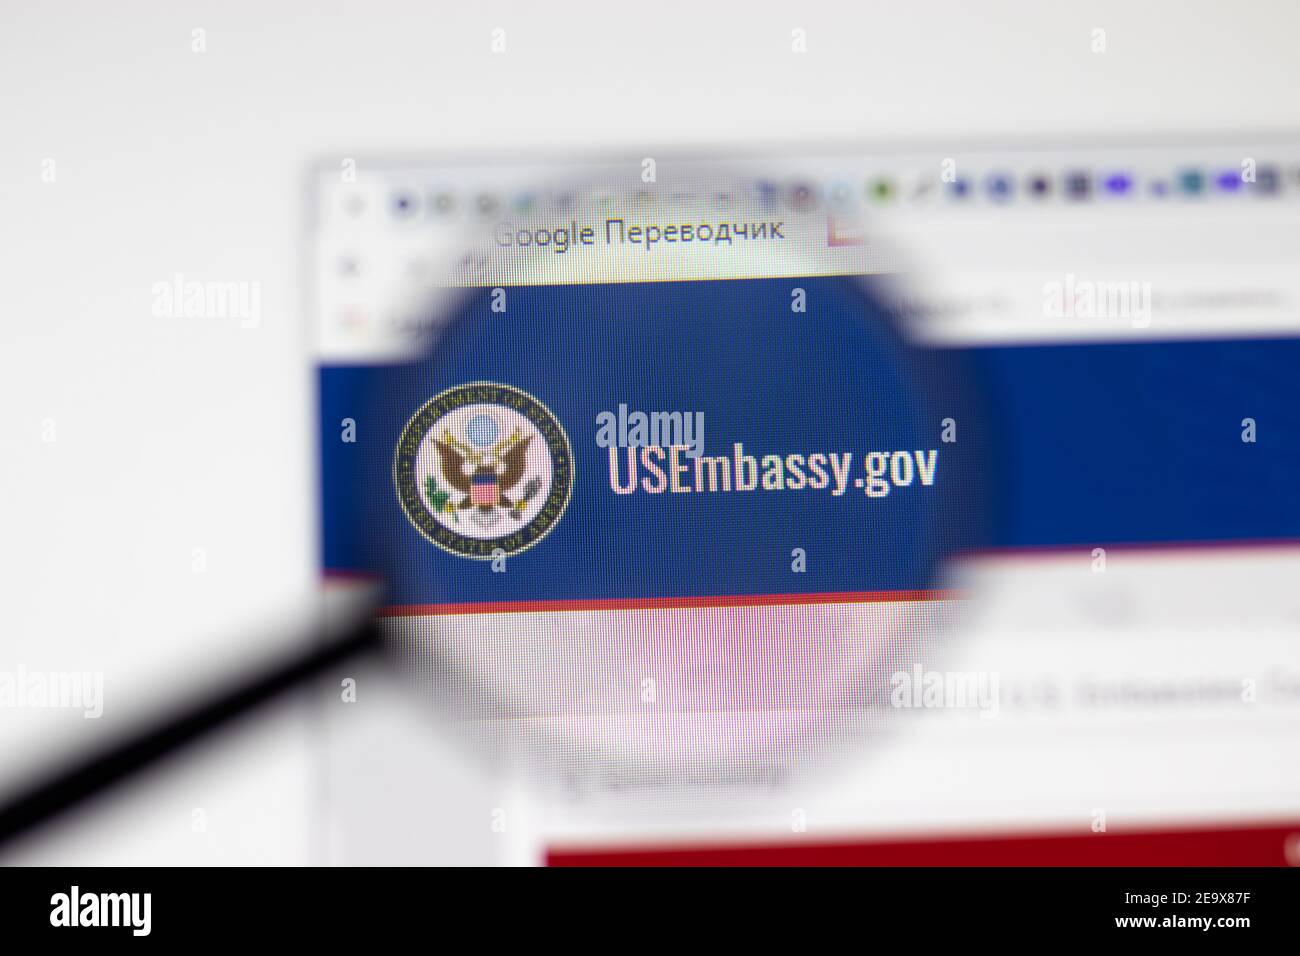 Los Angeles, USA - 1 febbraio 2021: Pagina del sito web DELL'Ambasciata DEGLI STATI UNITI. usembassy.gov logo sullo schermo, Editoriale illustrativo Foto Stock